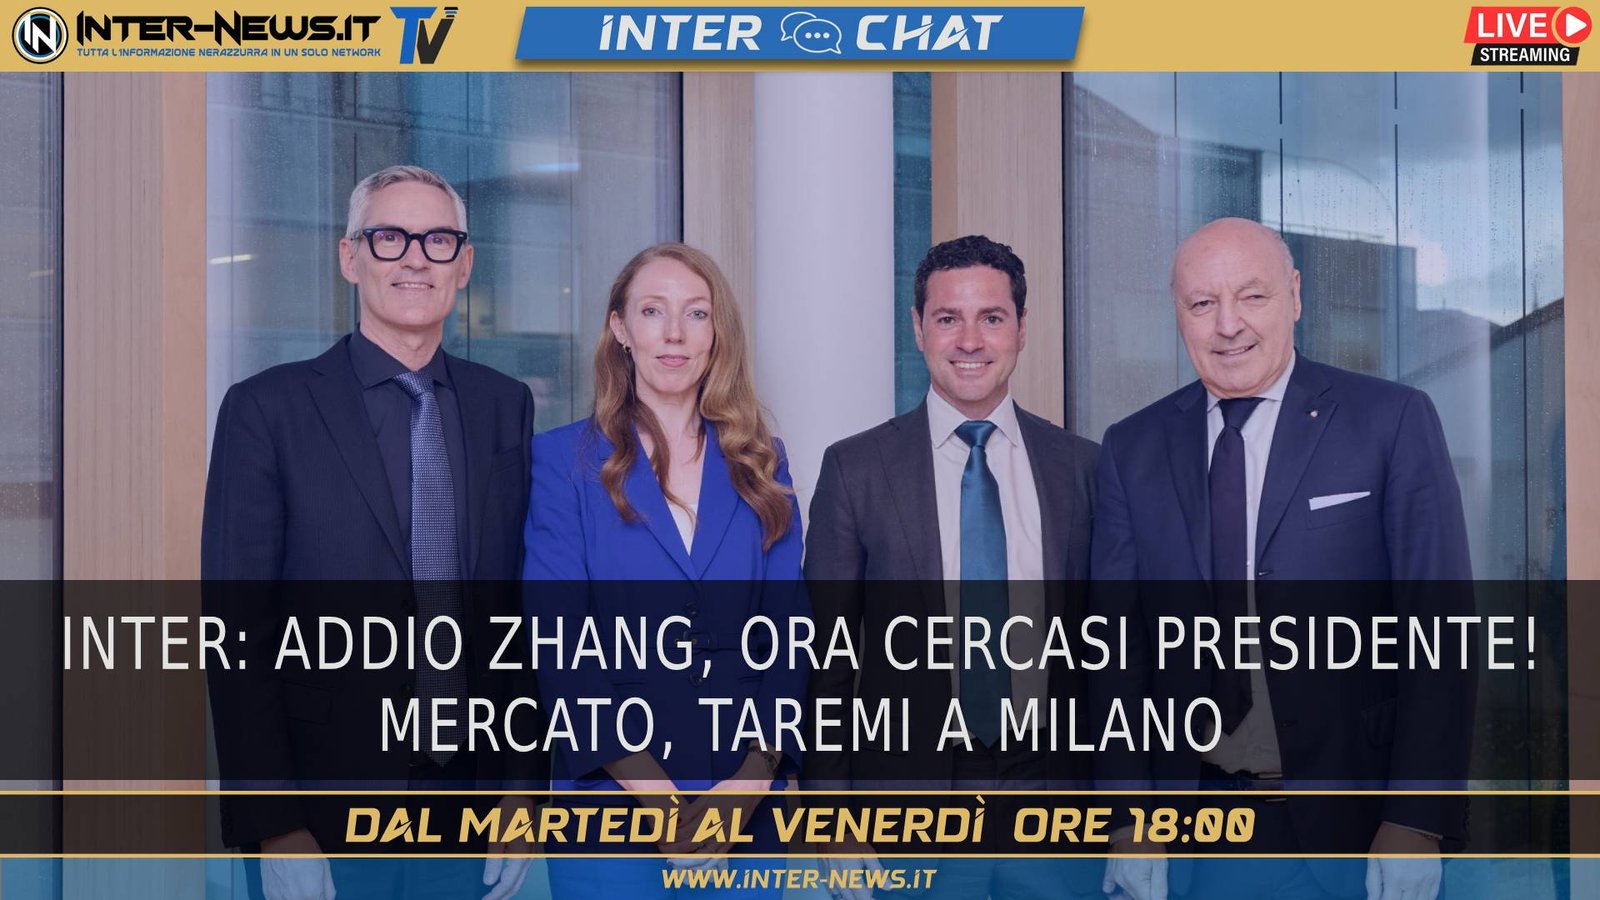 VIDEO – Inter, ora cercasi presidente! Taremi a Milano | Inter Chat